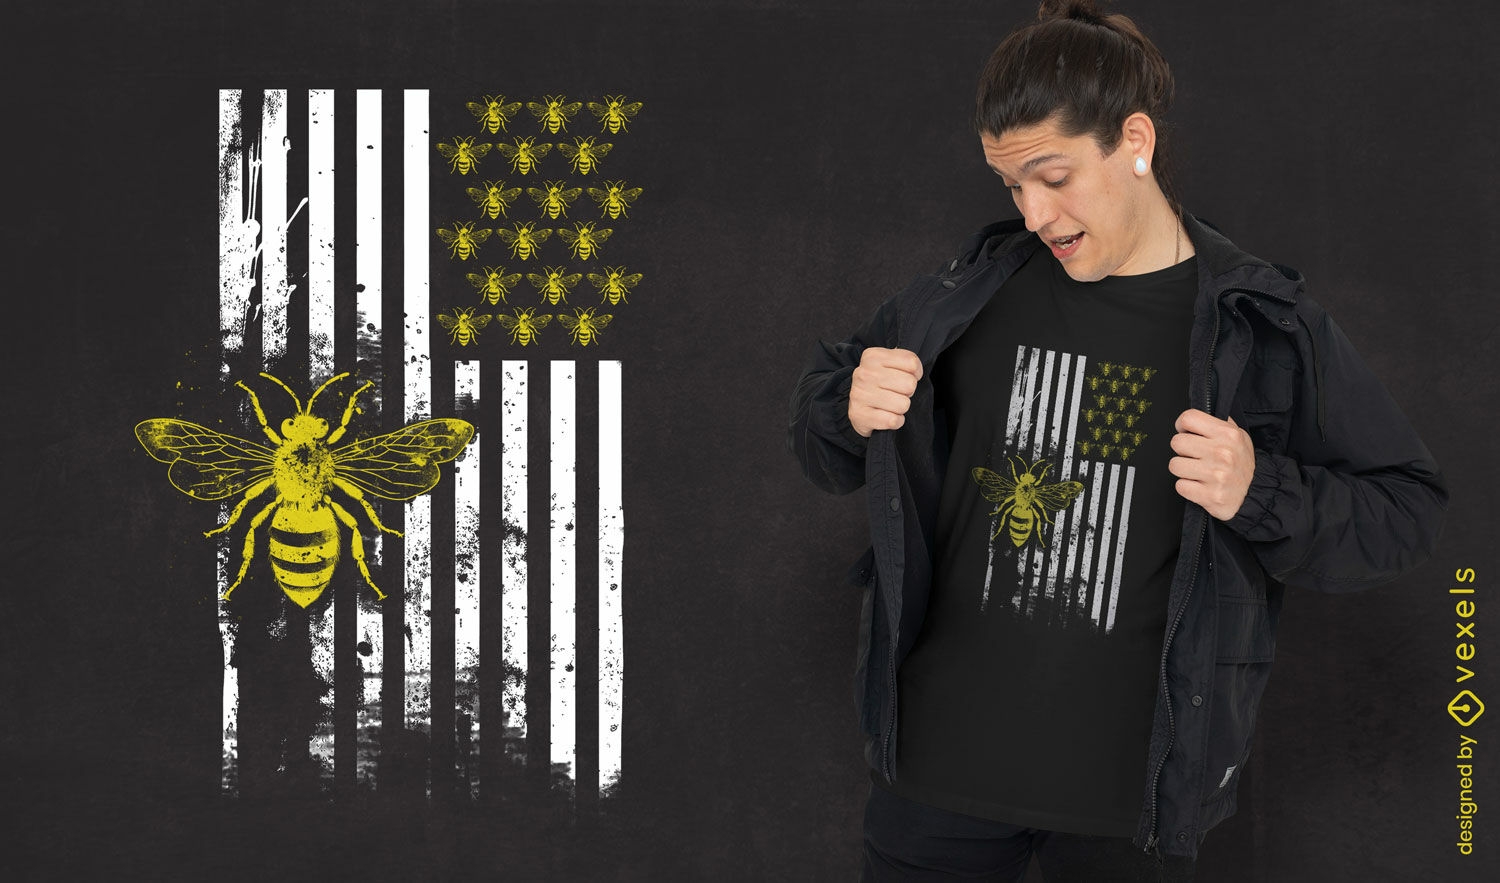 Bee-themed USA flag t-shirt design